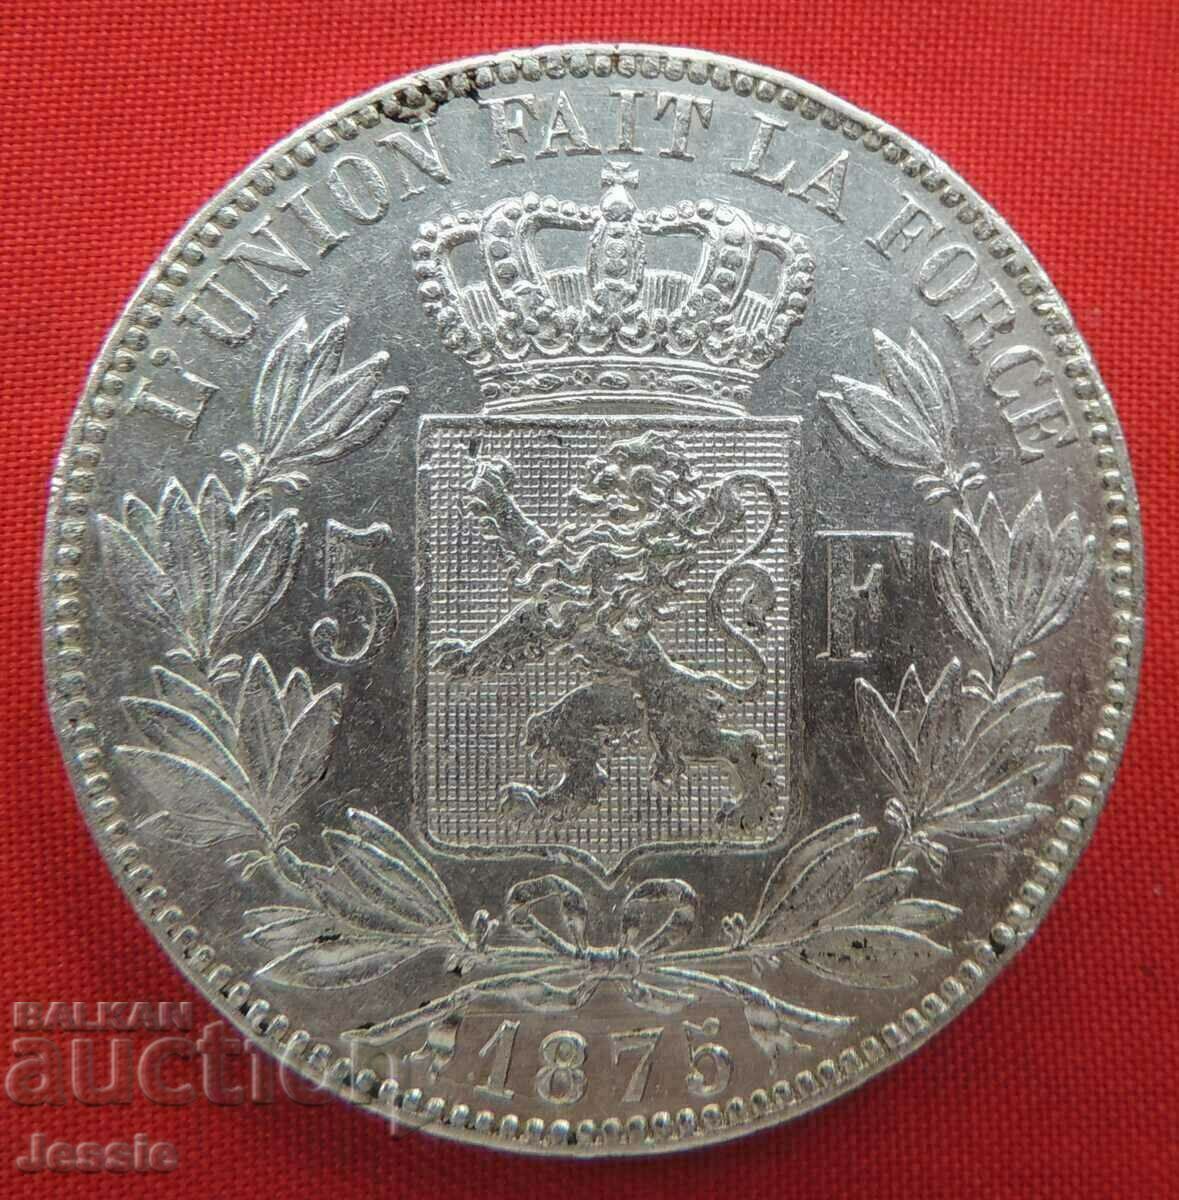 5 Francs 1875 Belgium Silver